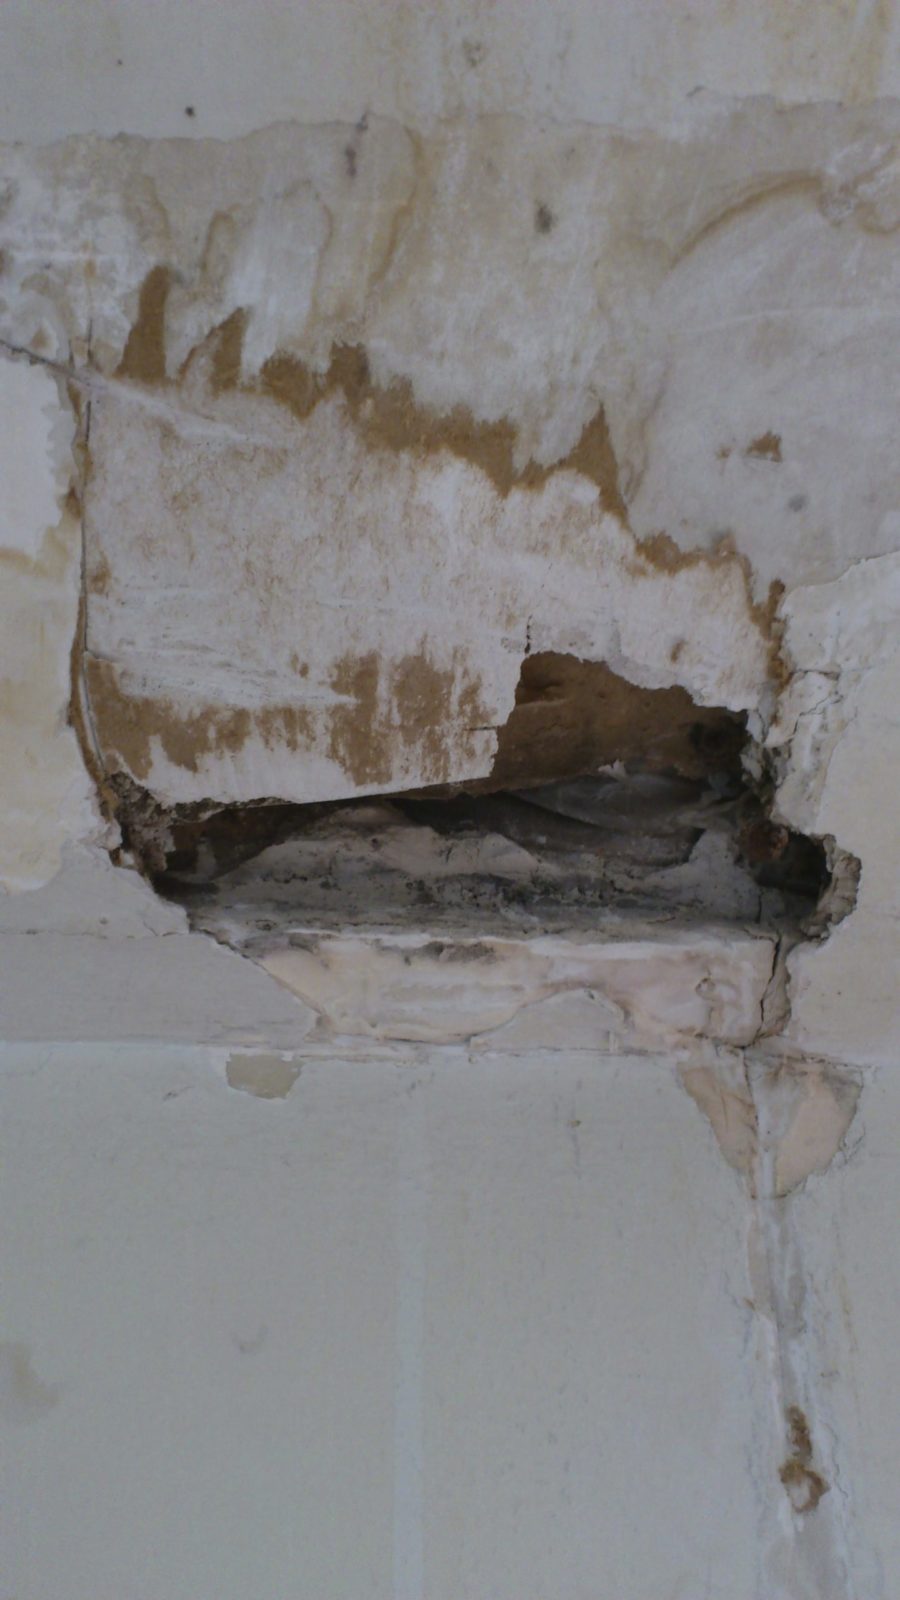 Terminite Damage to Drywall, basement drywall, drywall damage